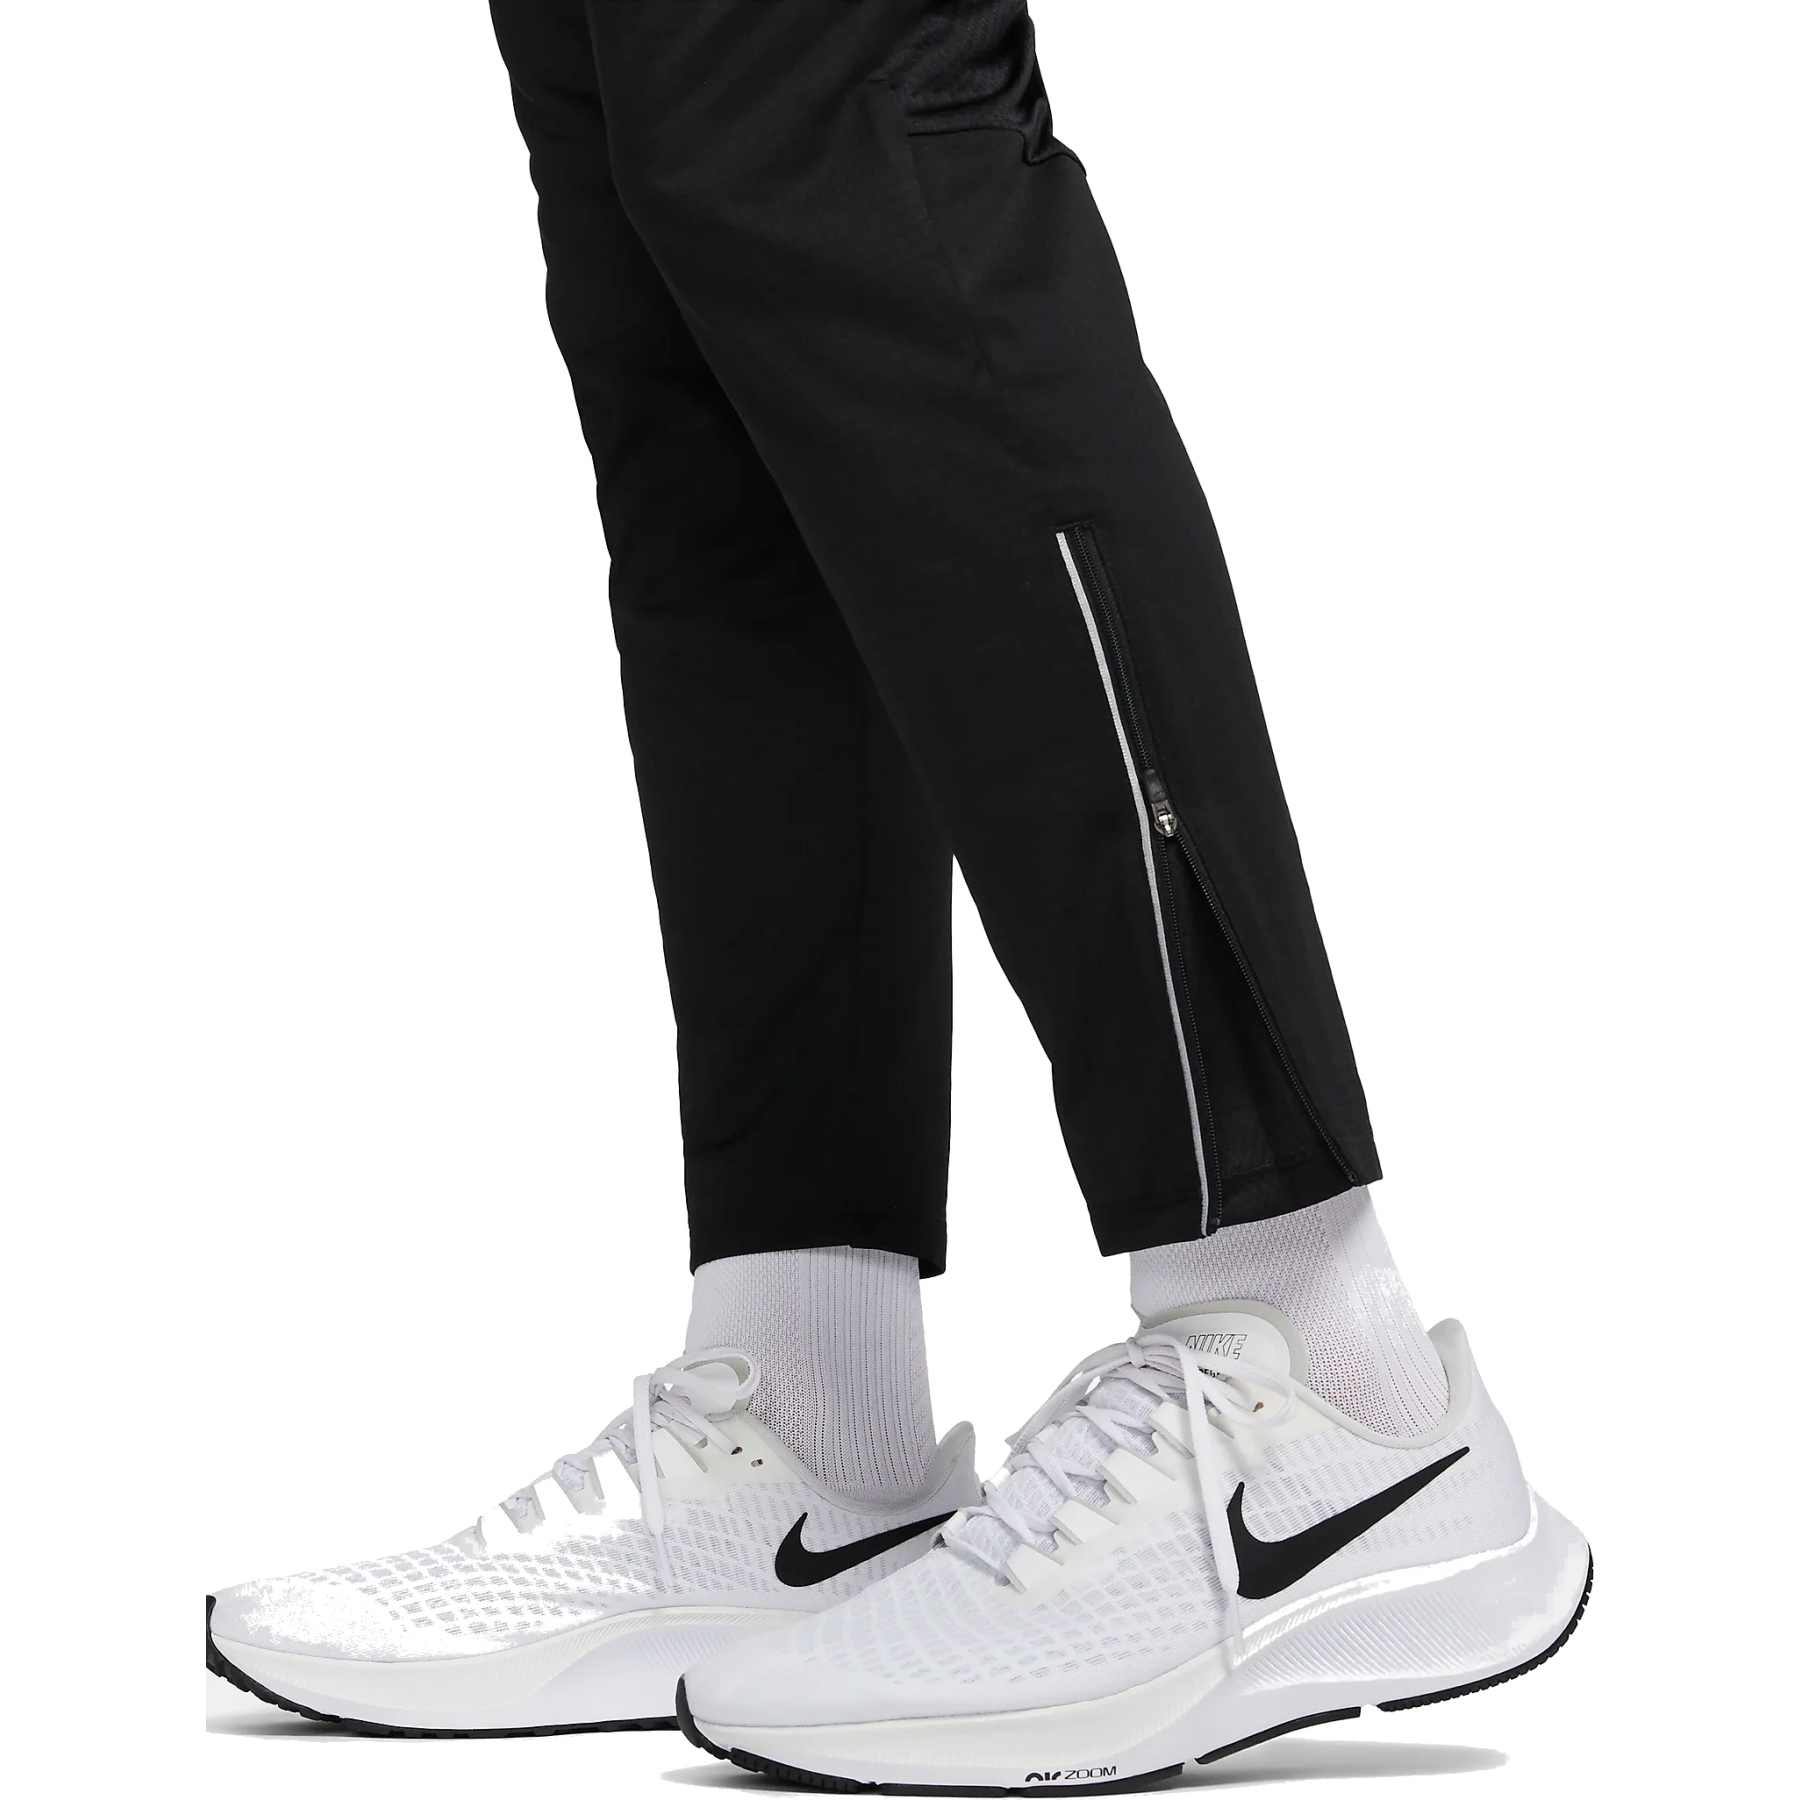 Swoosh Nike SB Track Pant Black - Jean Jail